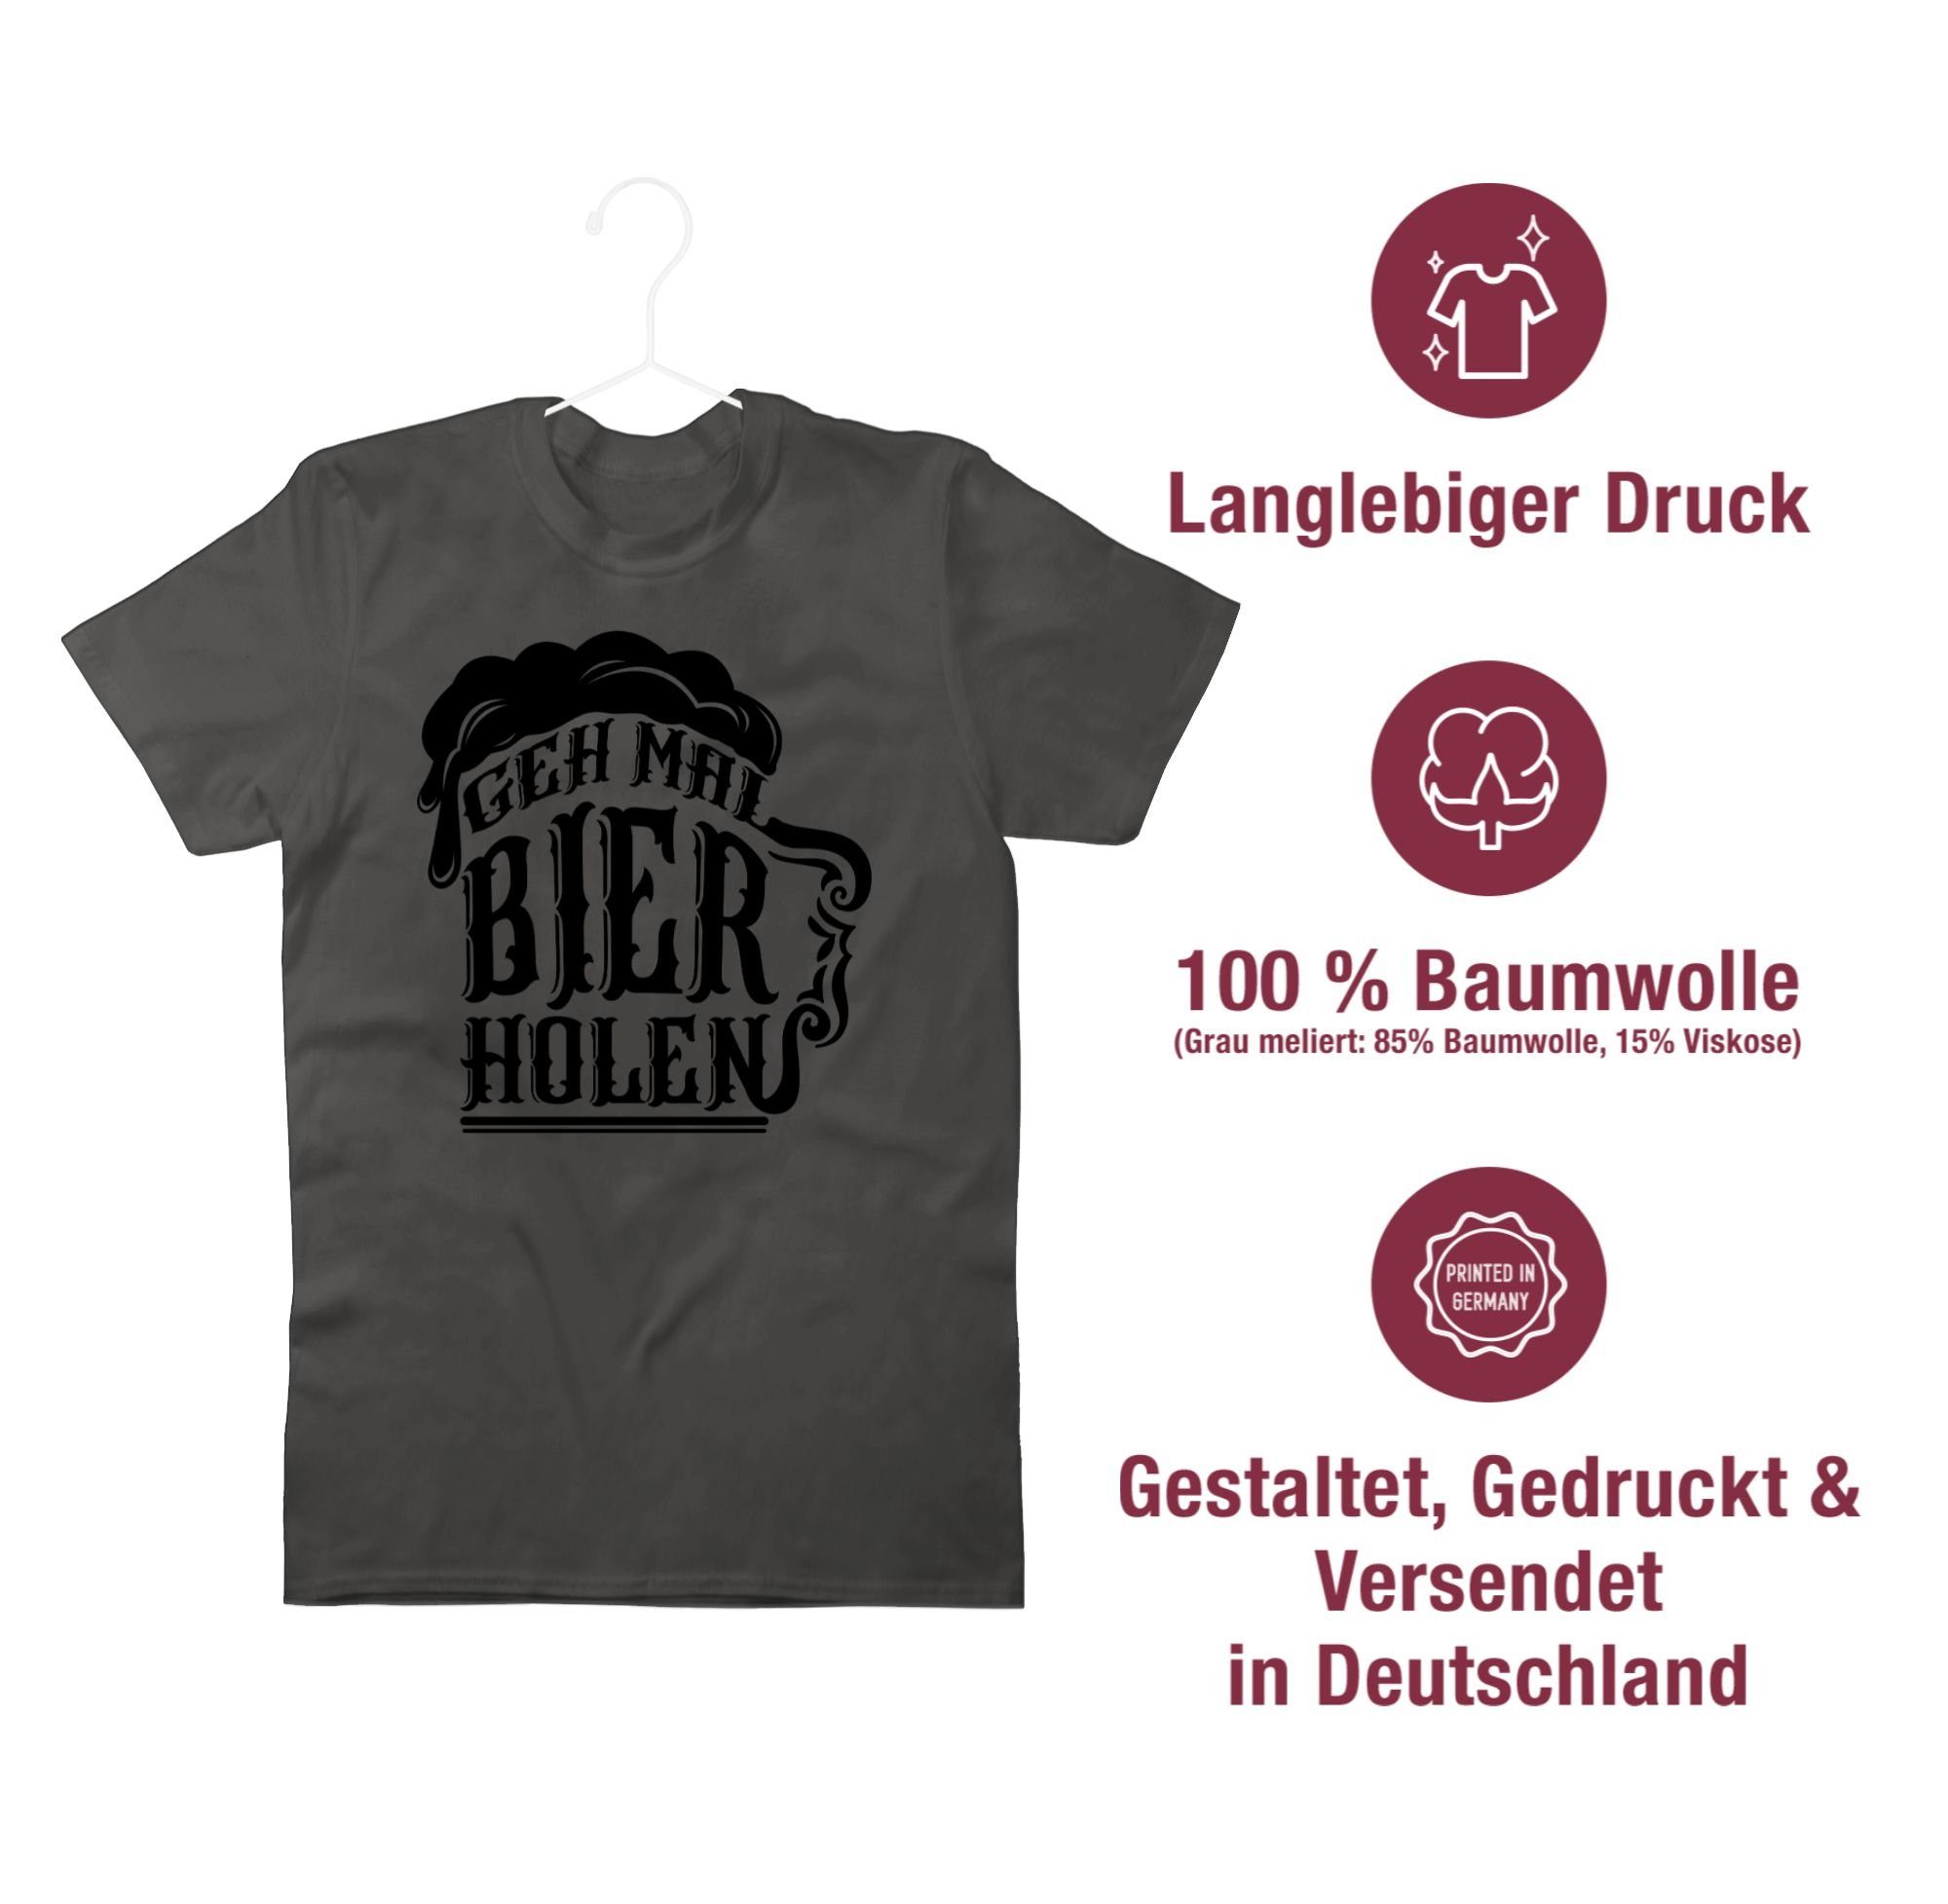 Bier mal 01 schwarz Alkohol Herren & holen - Dunkelgrau T-Shirt Shirtracer Geh Party